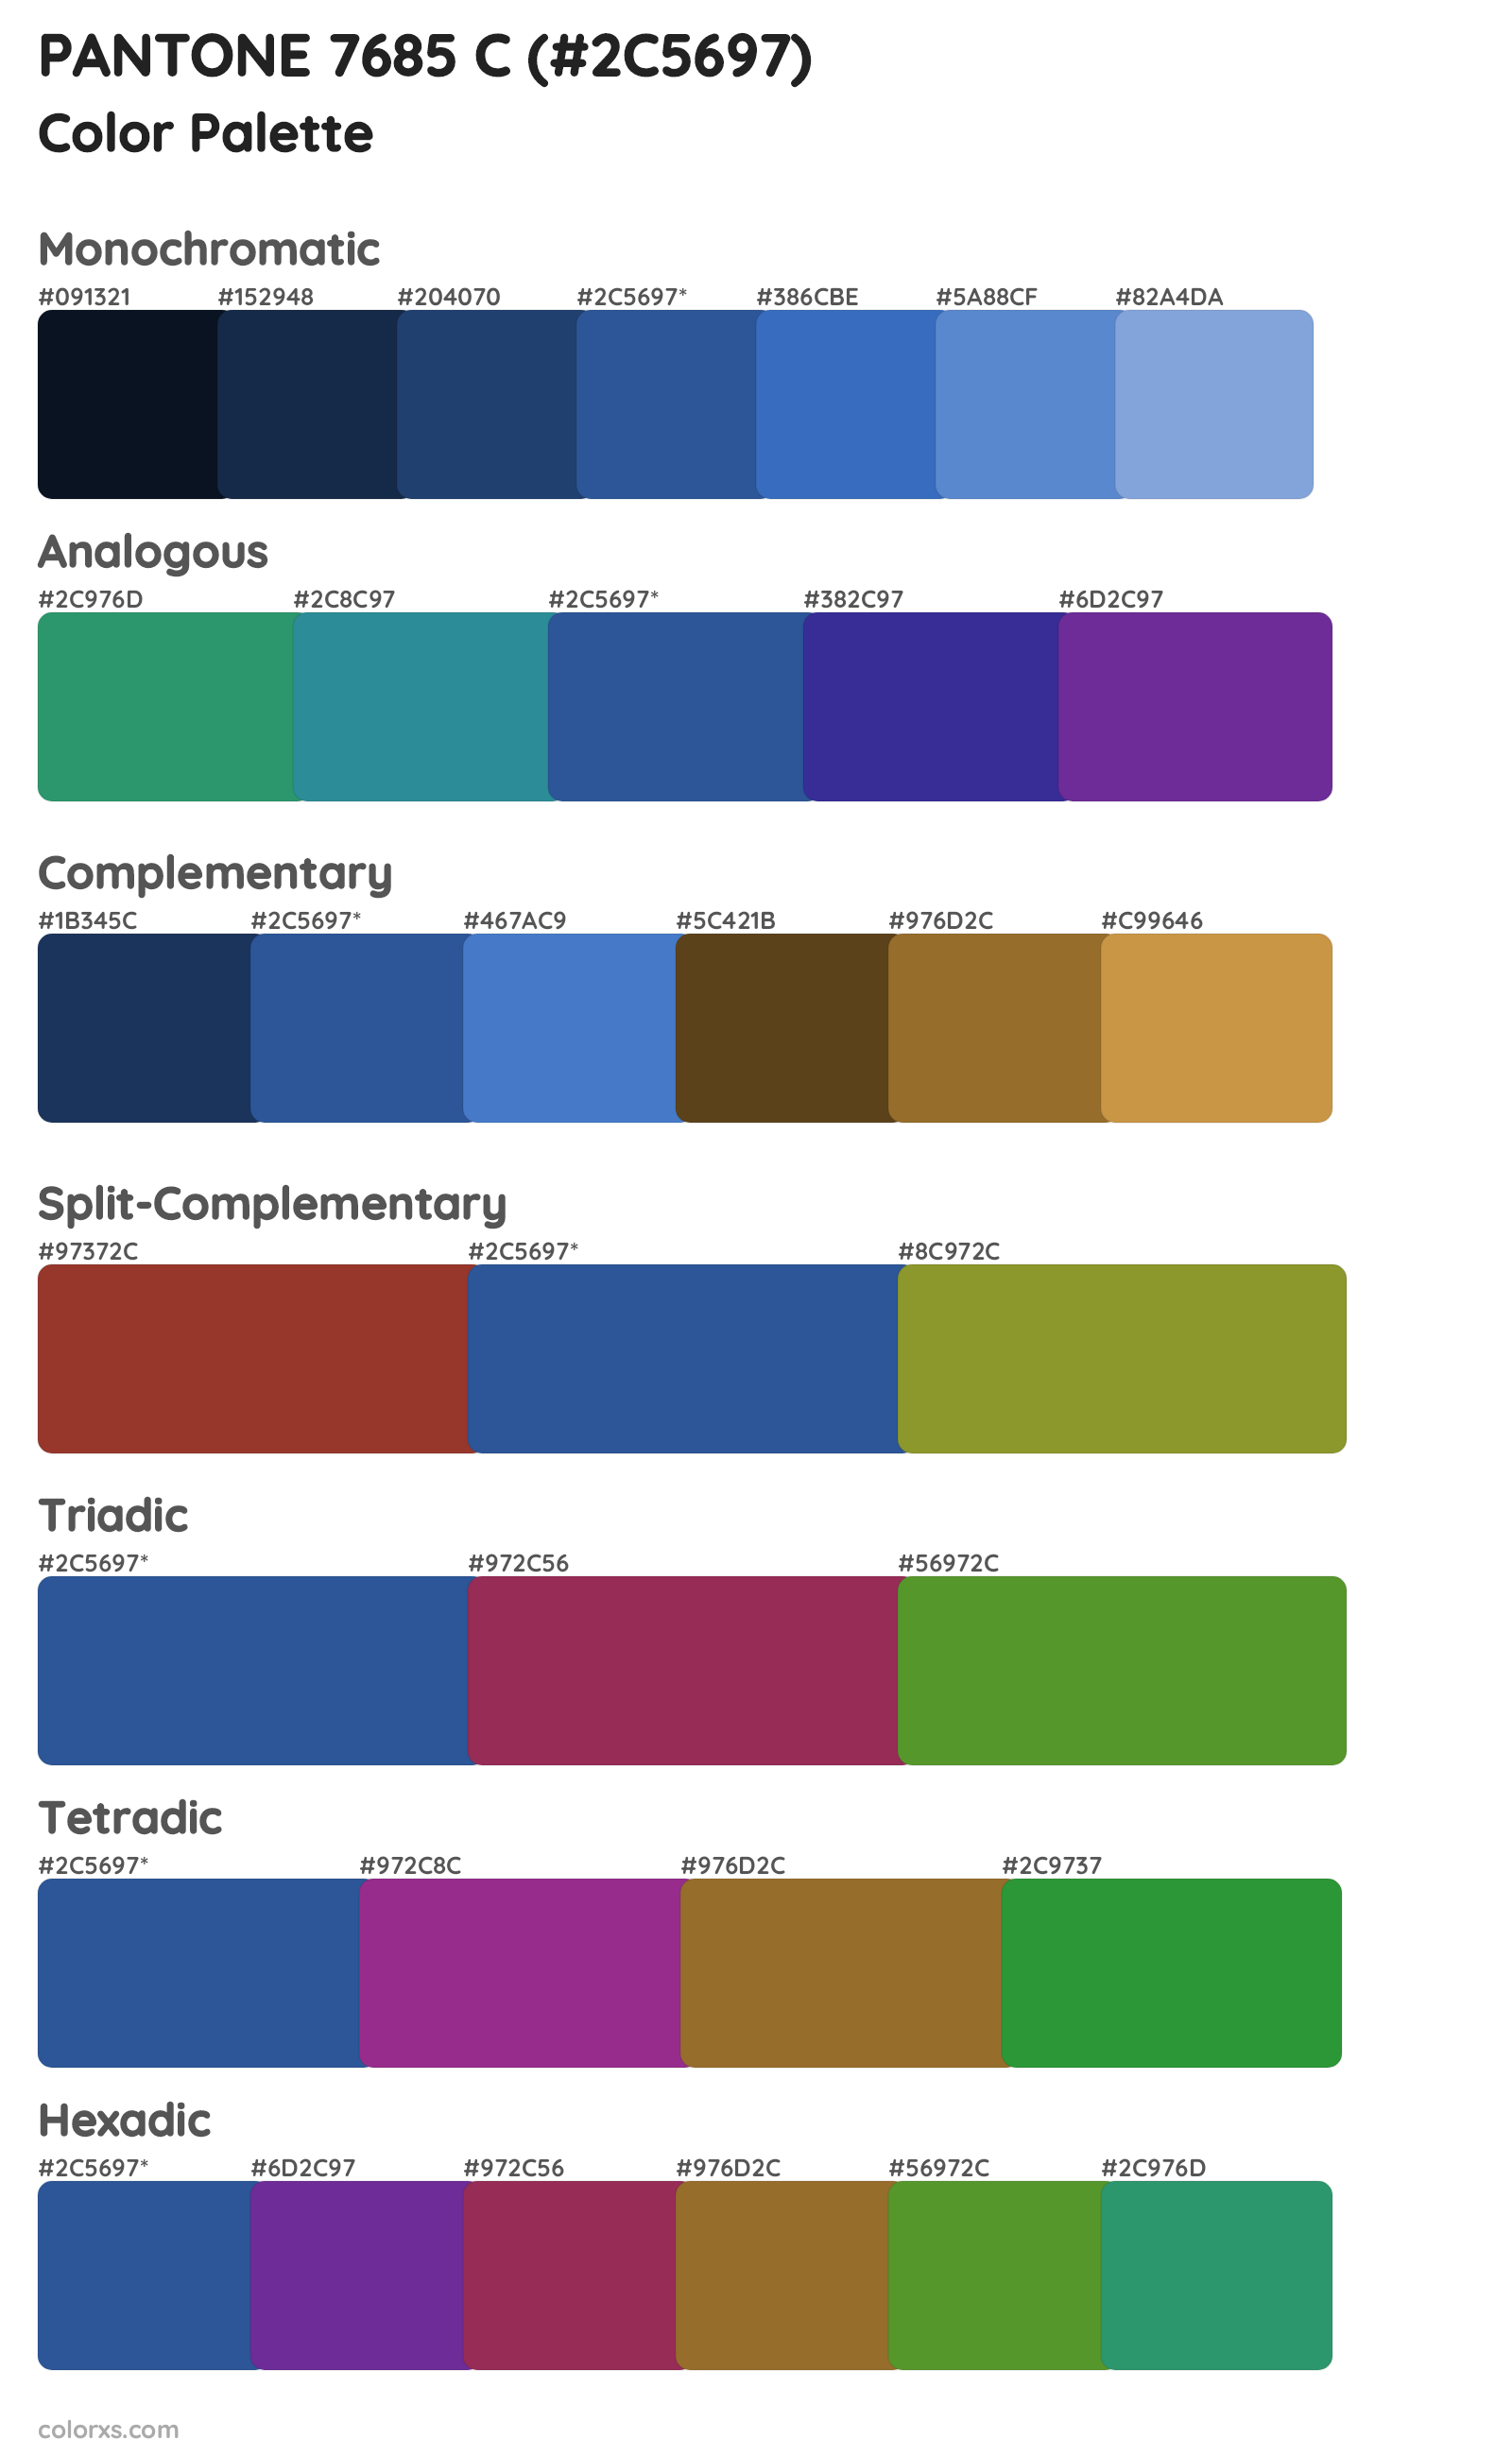 PANTONE 7685 C Color Scheme Palettes